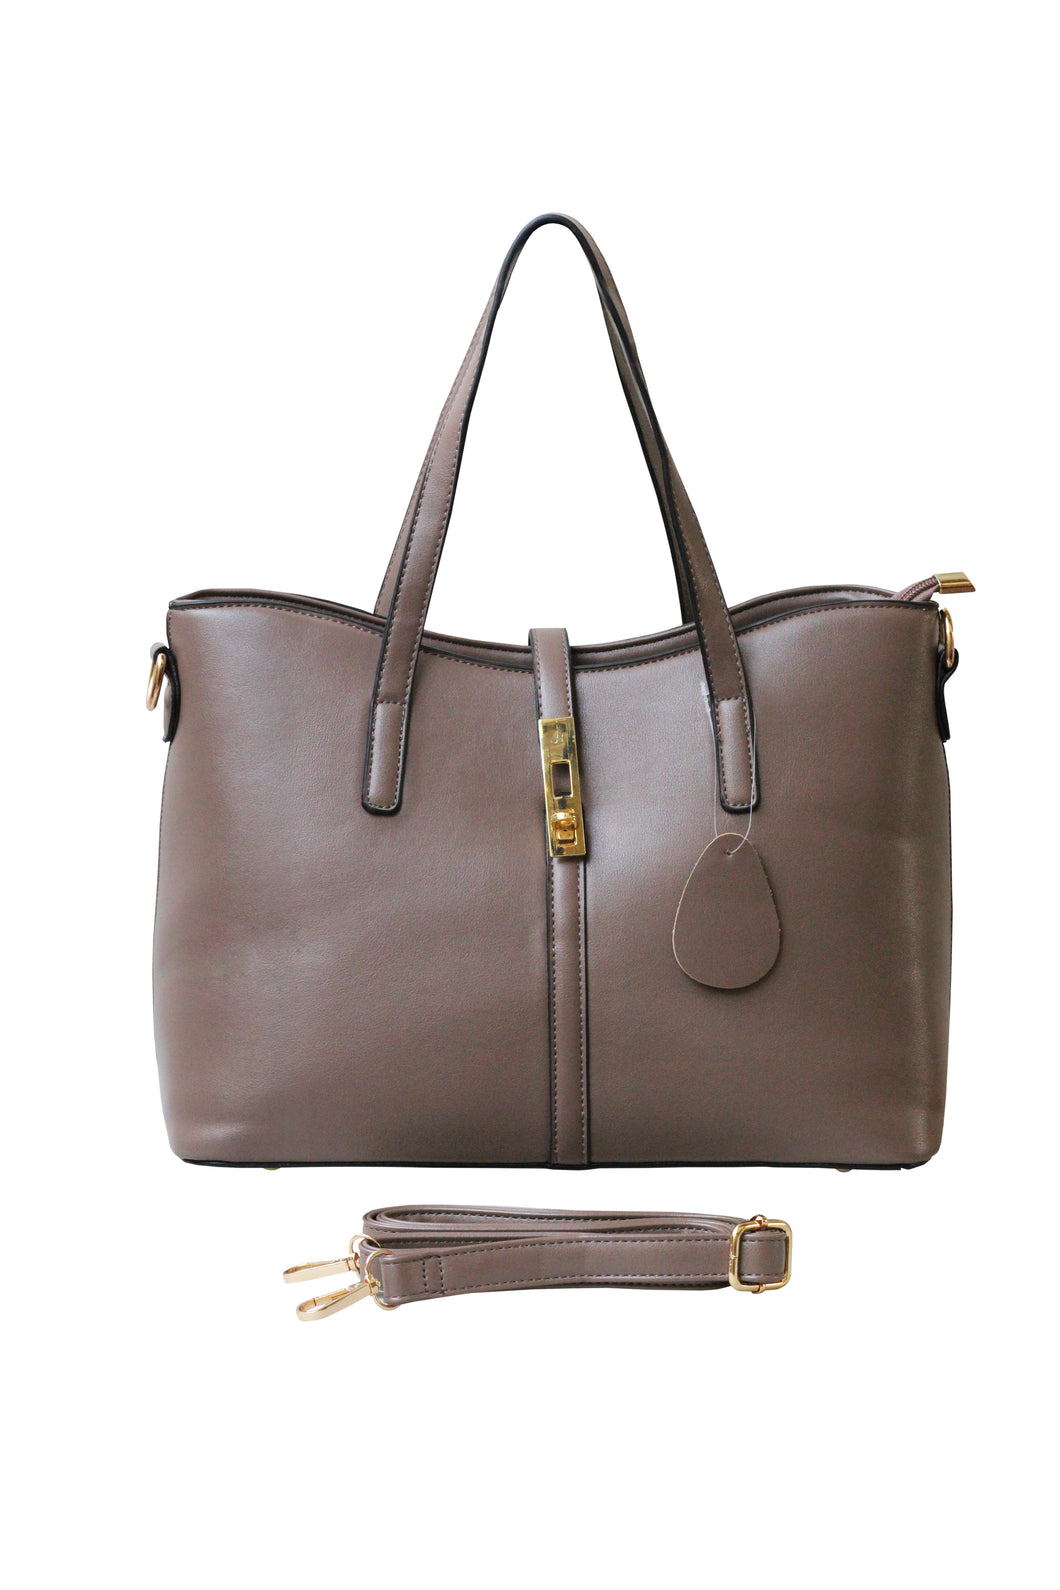 Tote Ladies Hand Bag (Brown)